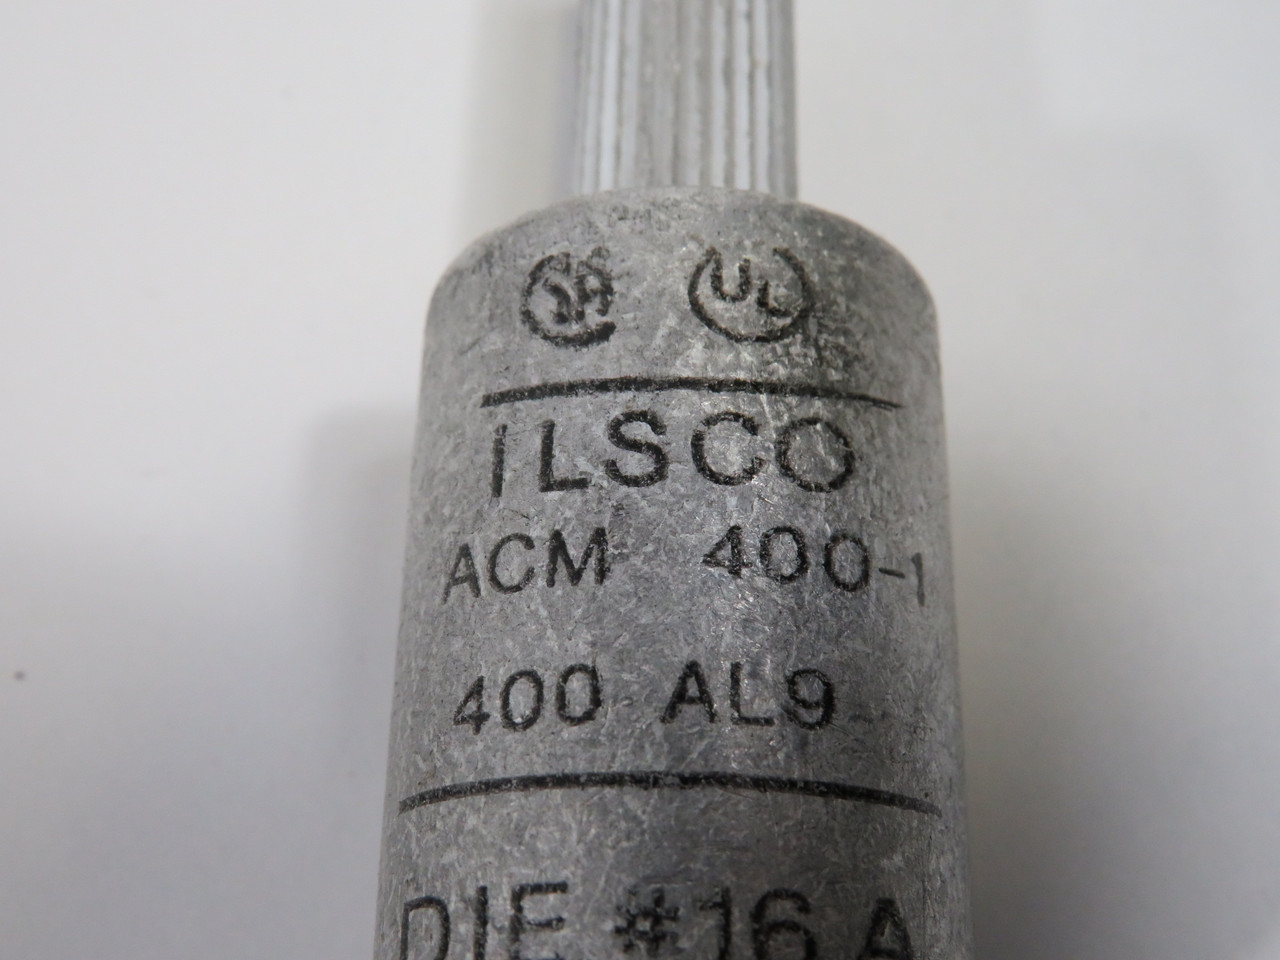 Ilsco ACM-400-1 Aluminum Pigtail Adapter 400kcmil C/W ACC-500 Cover ! NOP !